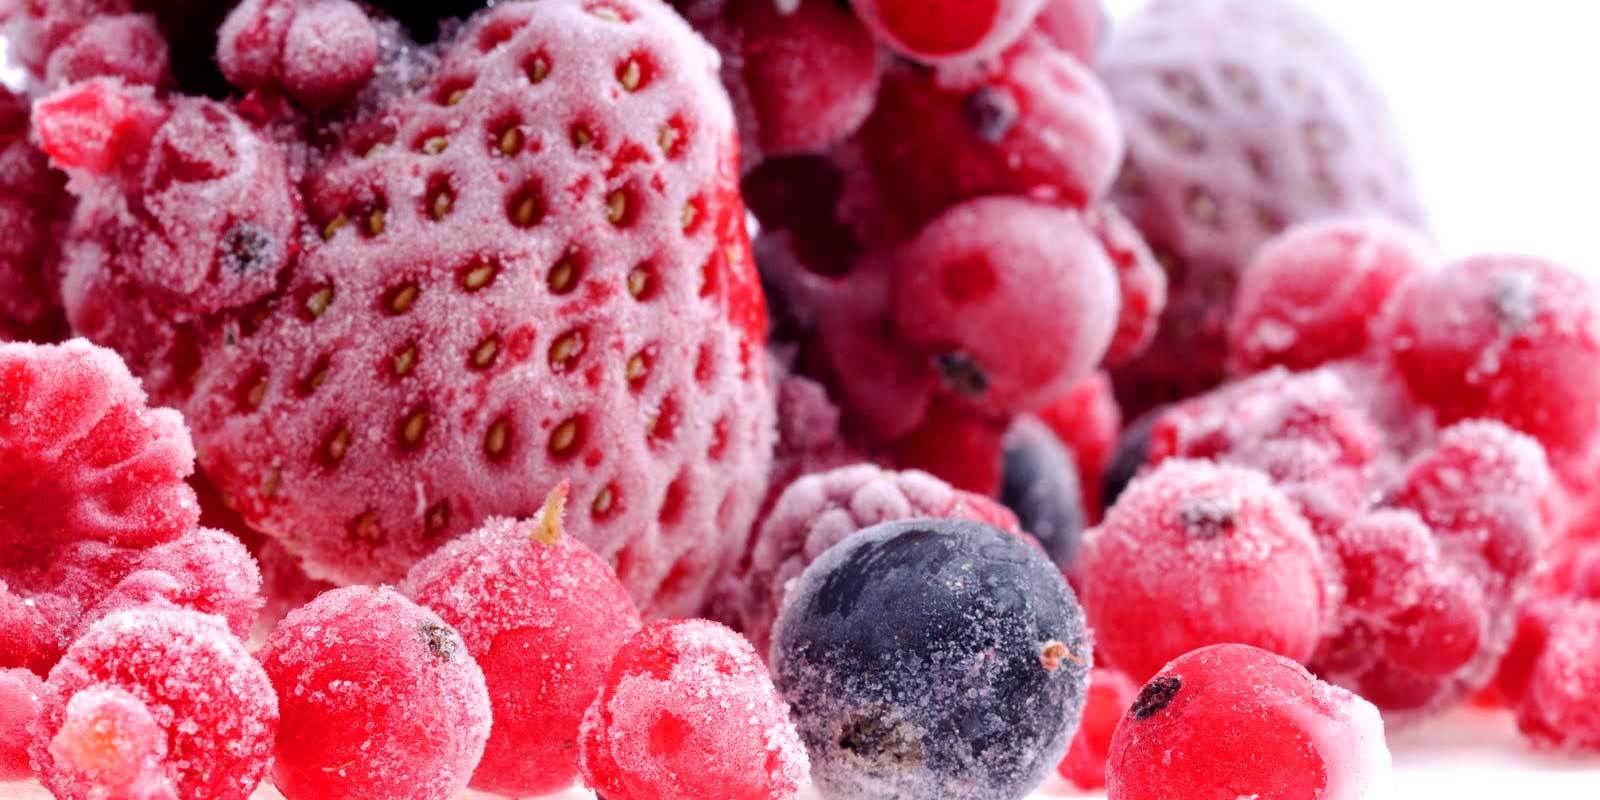 Mrazene ovocie a zelenina Ci uz ide o domacu zmrzlinu, vlastne dzemove kreacie alebo lahodnu tortu s mrazenym ovocim, na sklade mate spravne mnozstva. Na spontanne spracovanie mrazeneho ovocia nie je potrebna ziadna magia.